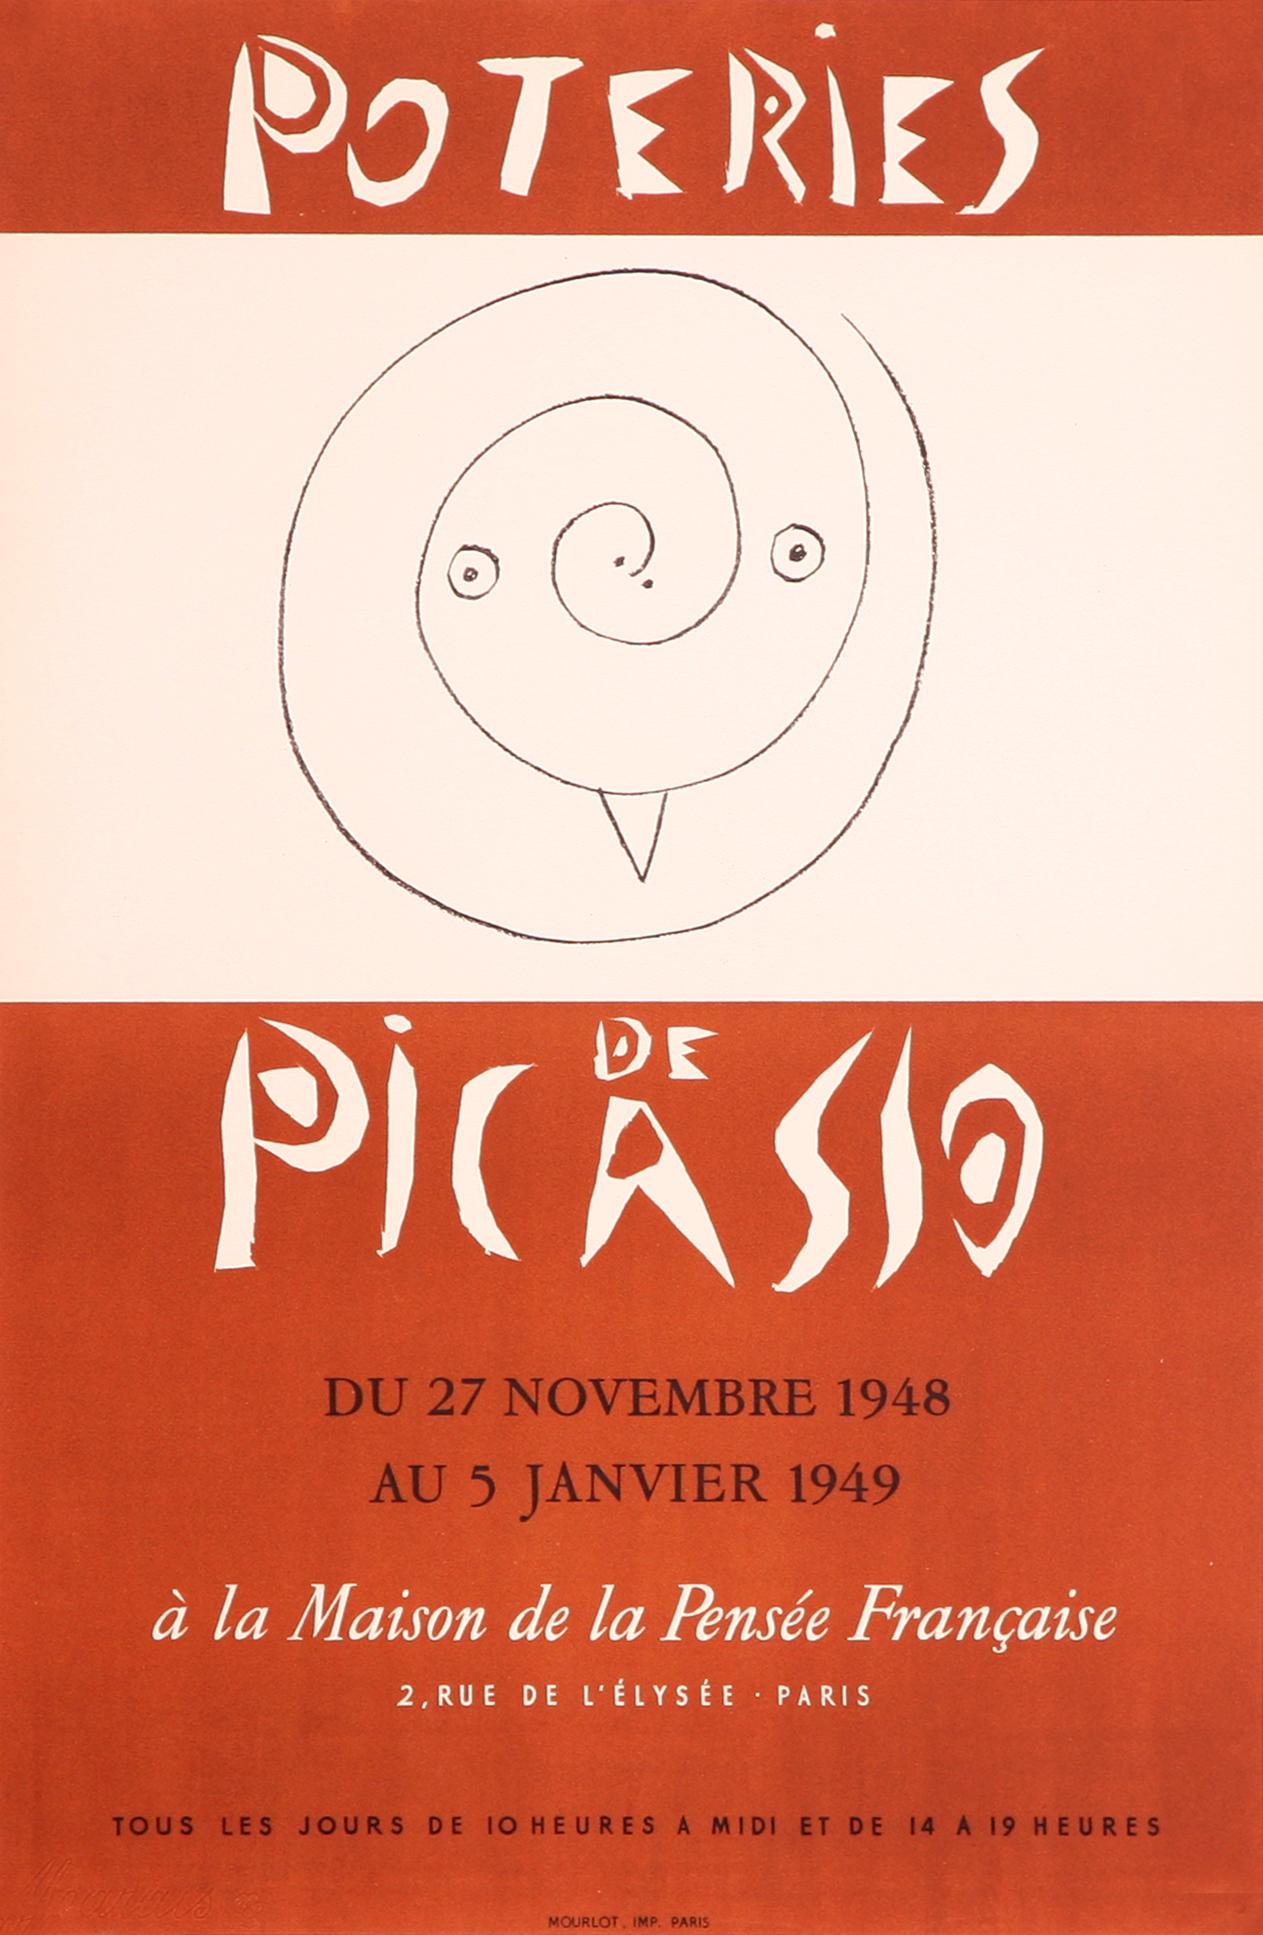 Cette belle et rare affiche lithographique a été produite aux Ateliers Mourlot pour annoncer une exposition de poteries et de céramiques créée dans le sud de la France par Pablo Picasso en 1948. Elle a été conçue par Picasso et reproduite par le